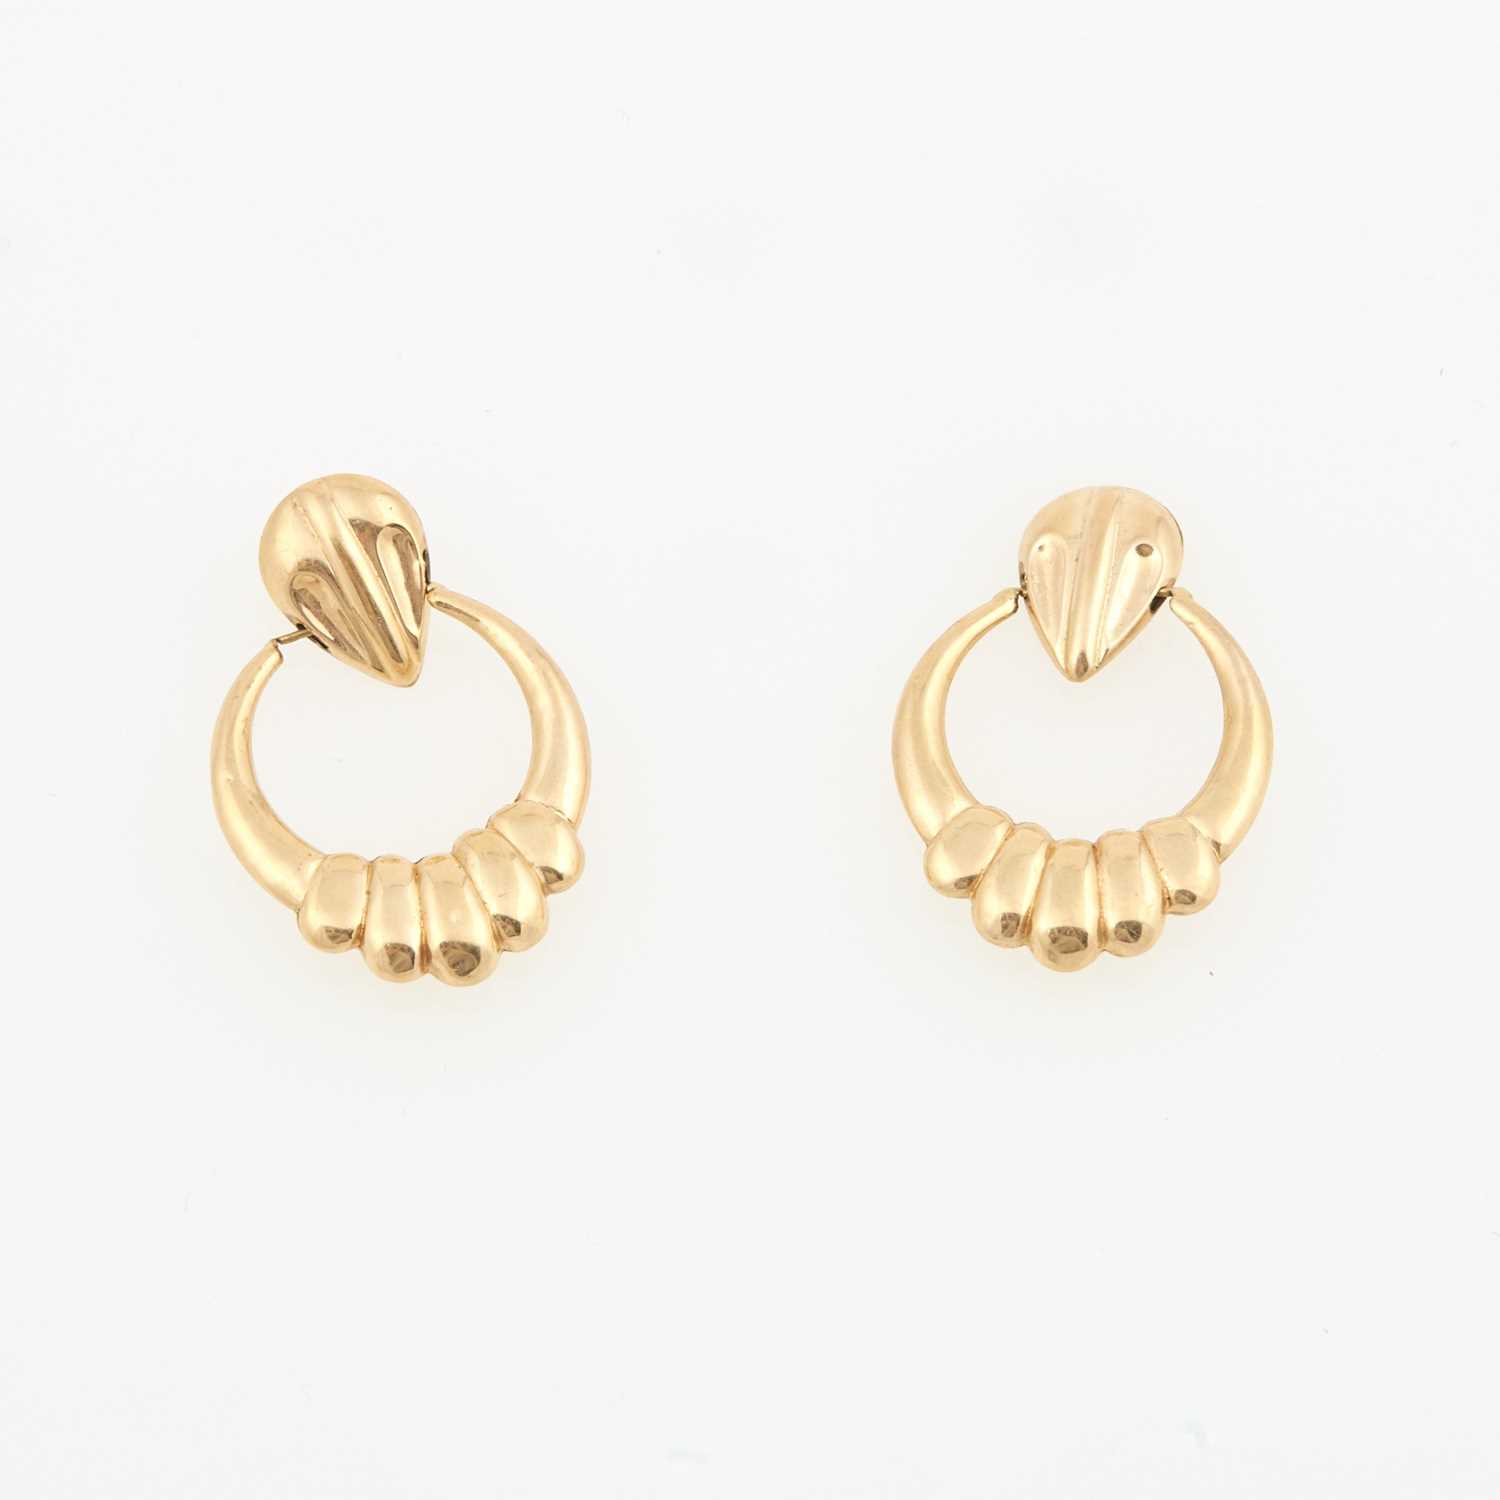 Lot 184 - Two Gold Earrings, 14K 2 dwt.